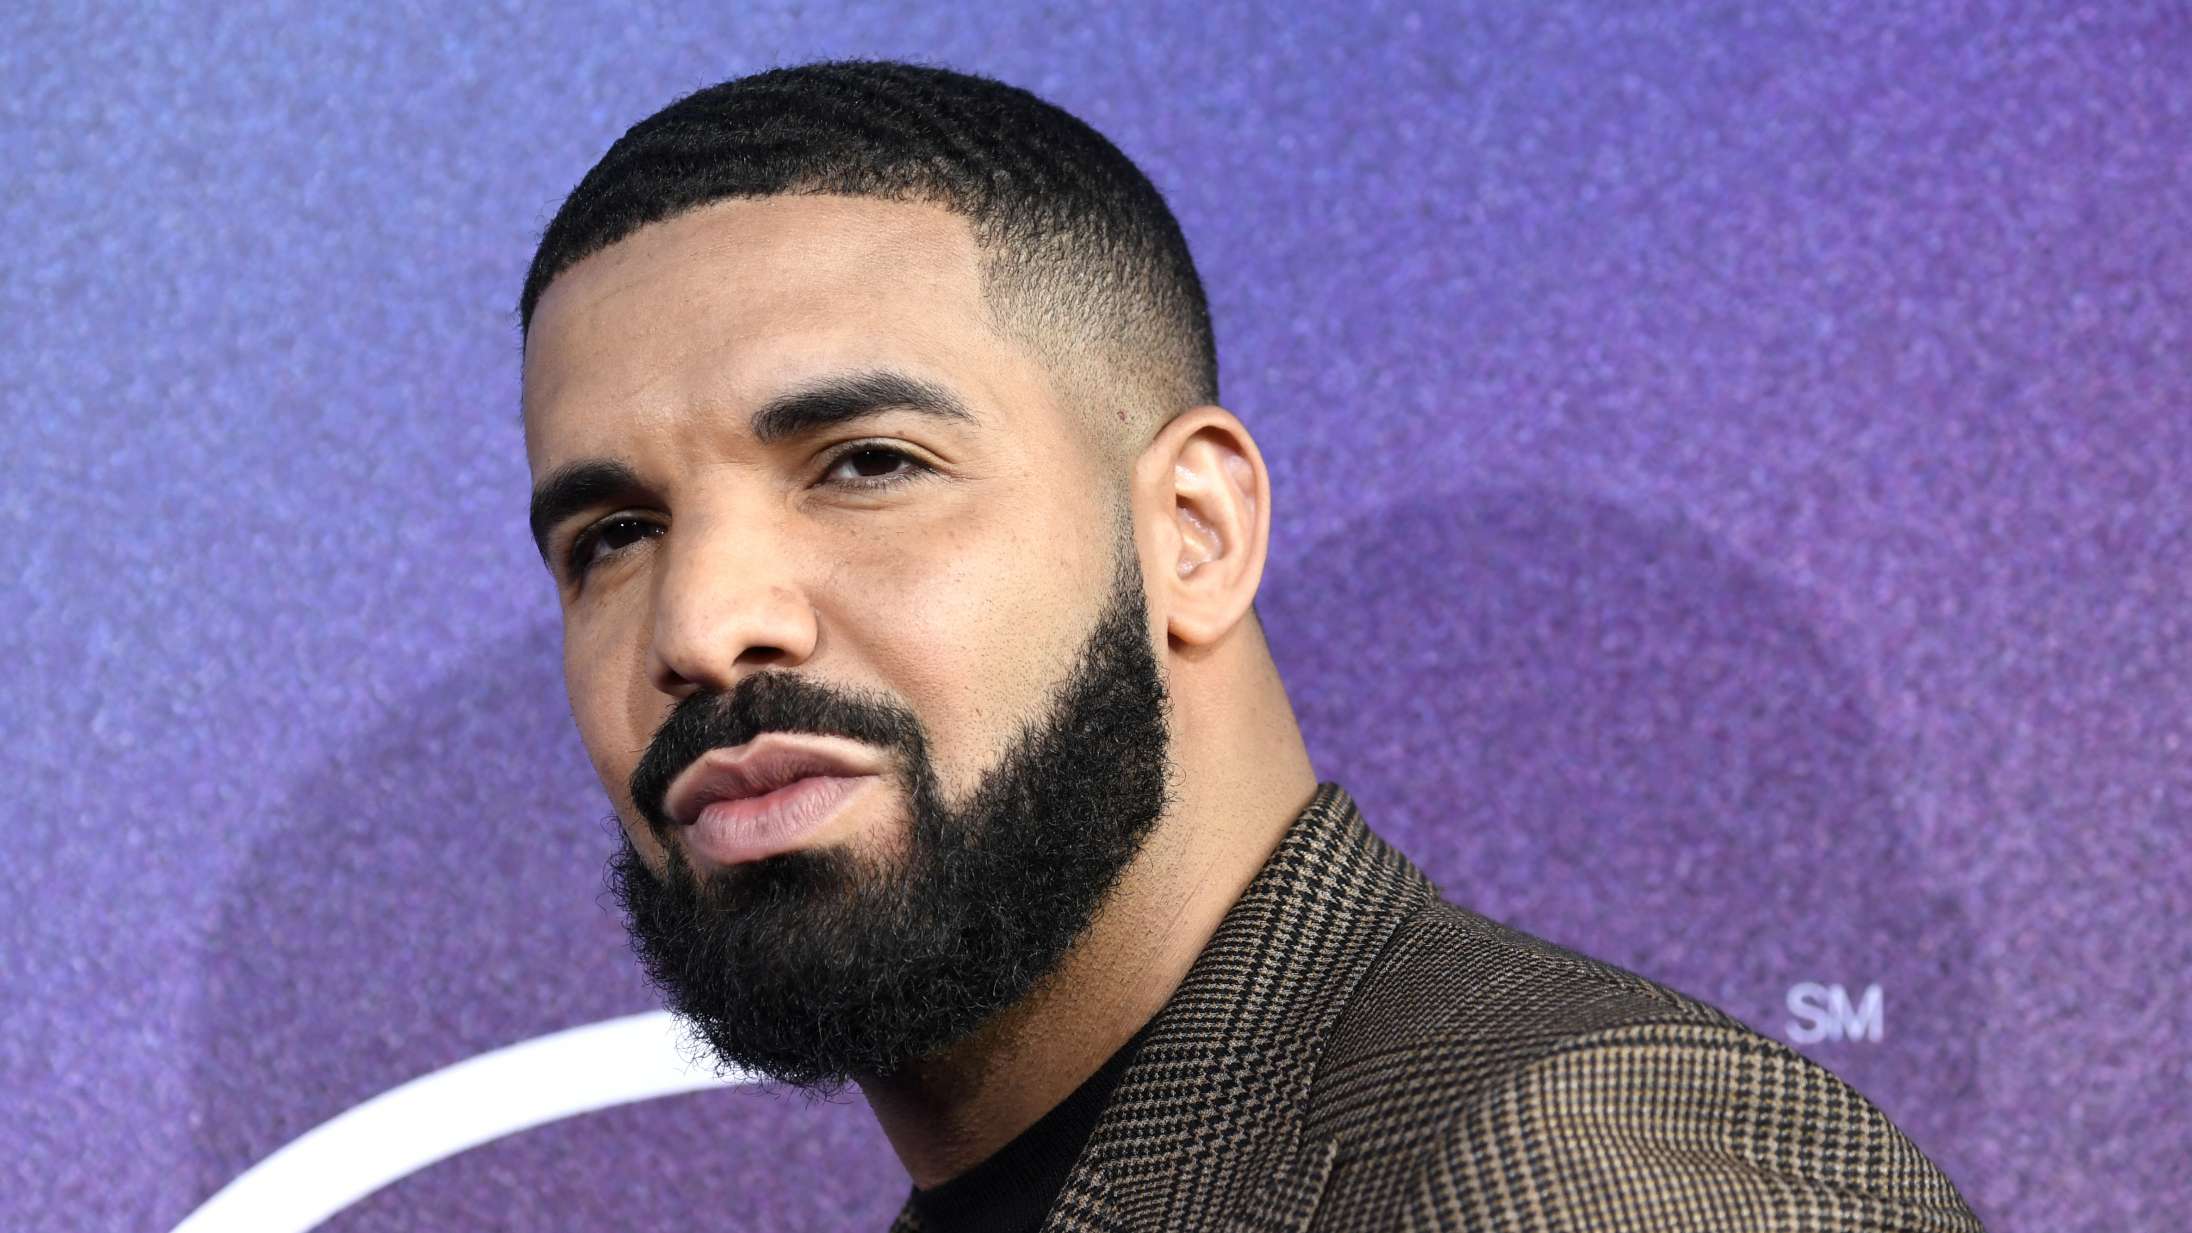 Fan blev droppet af sin kæreste, så Drake gav ham 350.000 kroner som trøst